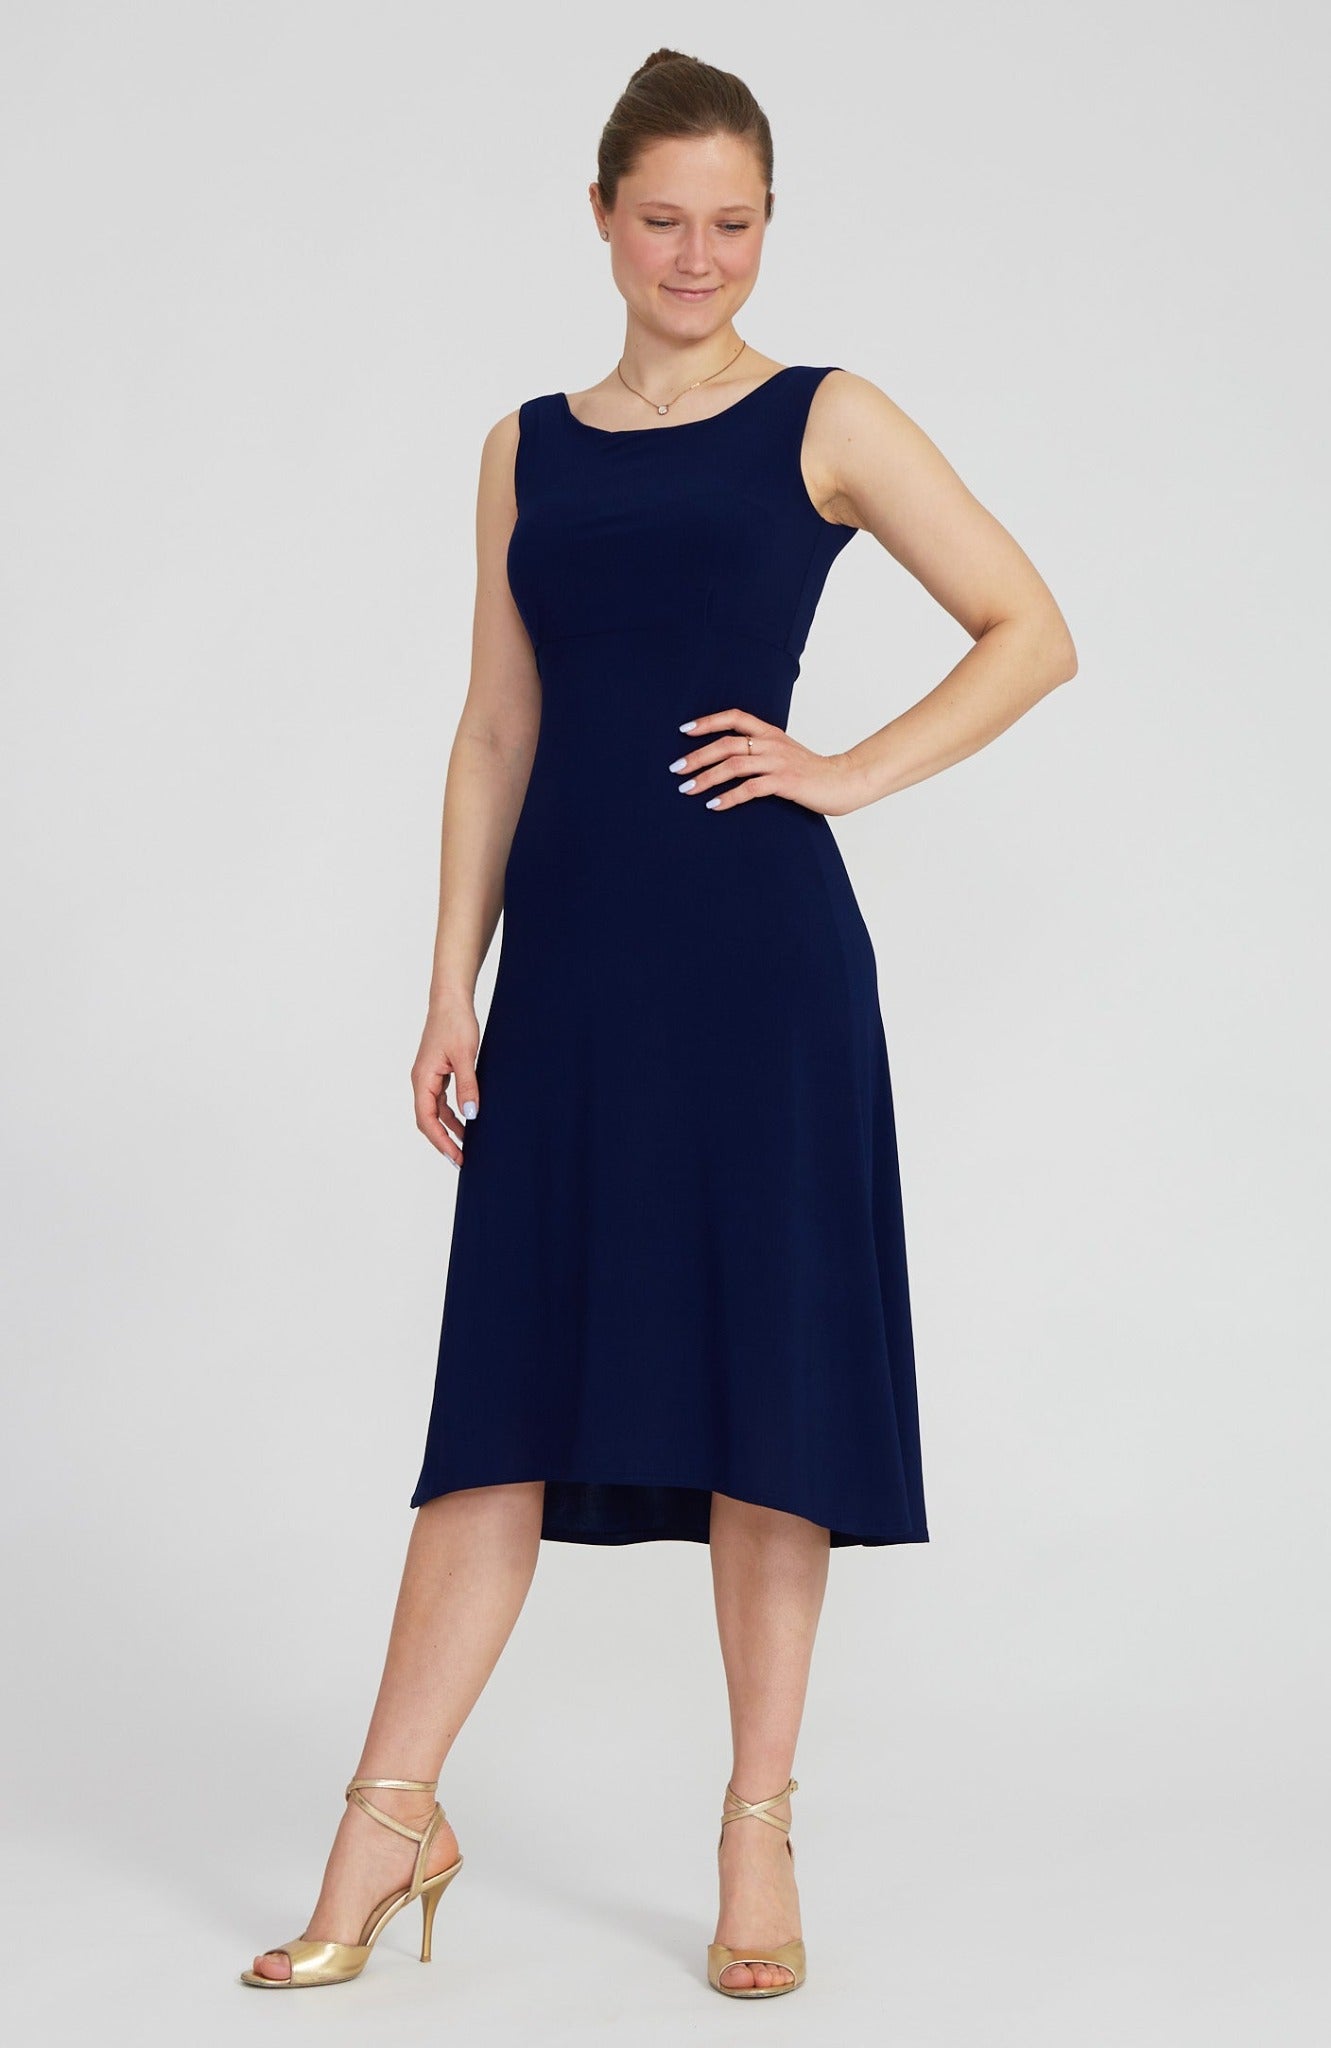 NOELIA - A-Line Tango Dress in Navy Blue